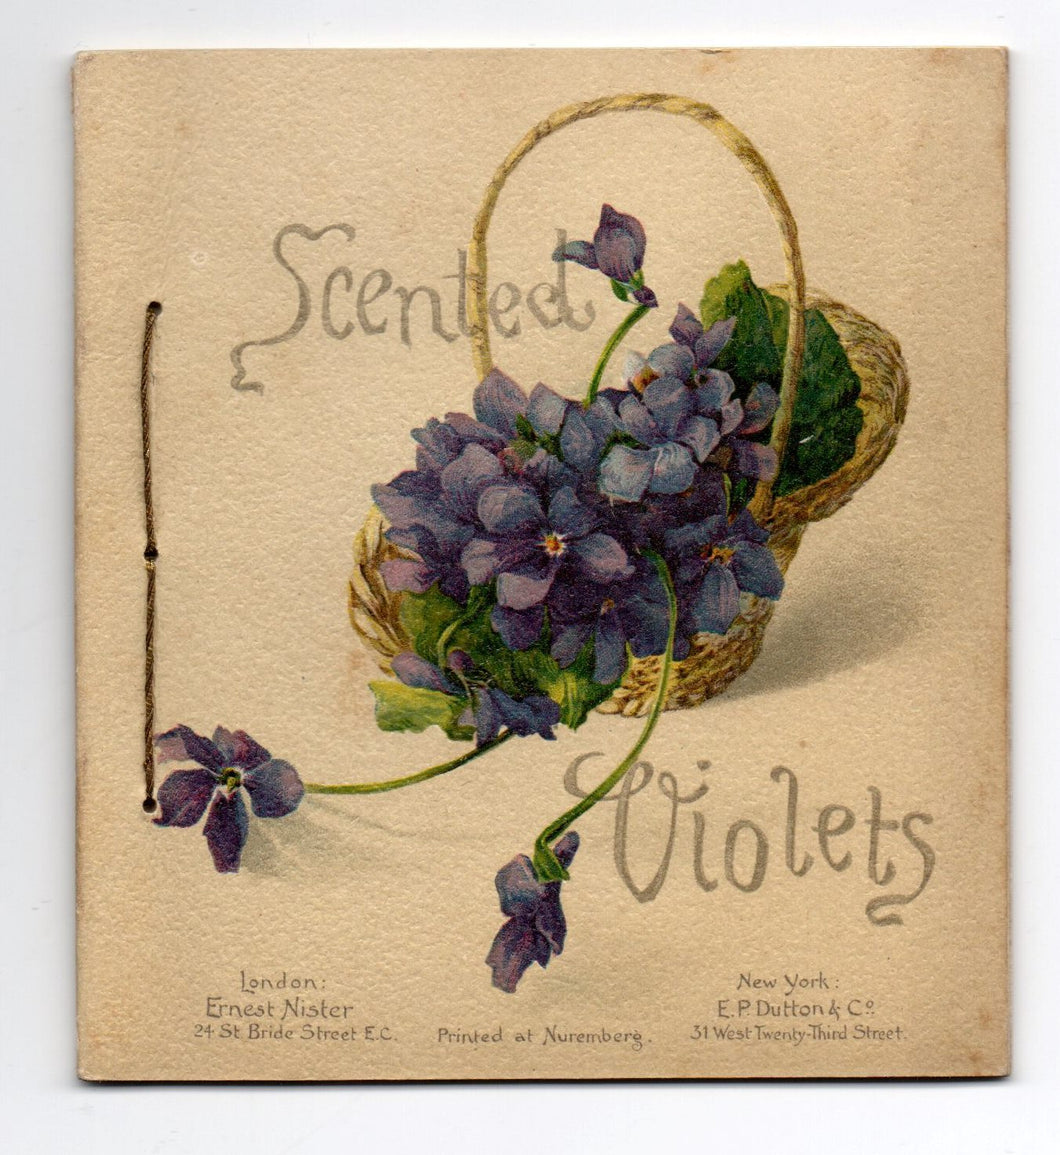 Scented Violets